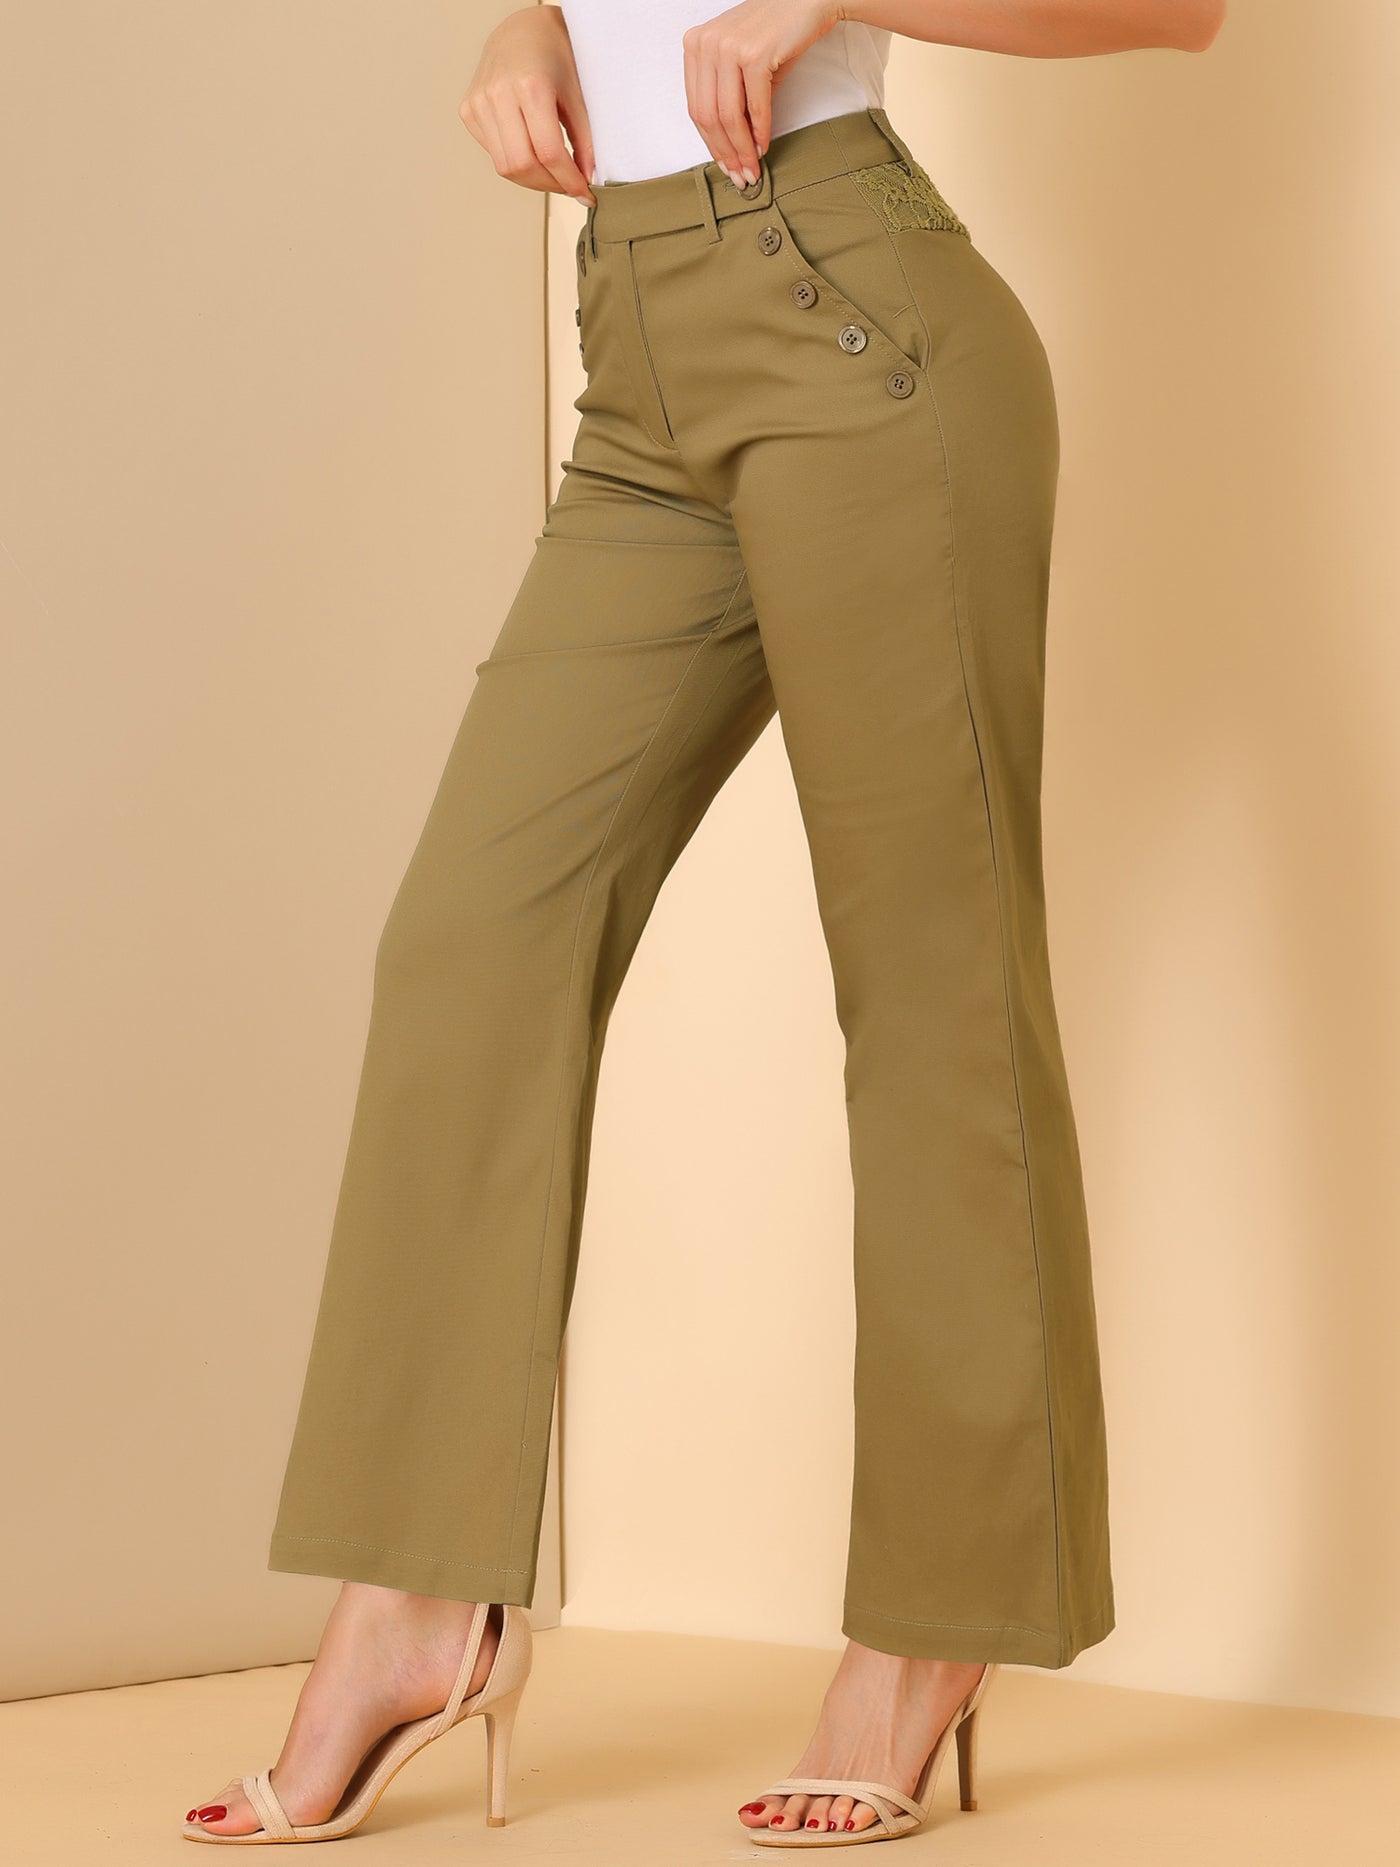 Allegra K Bell Bottom 70s Long Pants High Waist Elegant Work Trousers